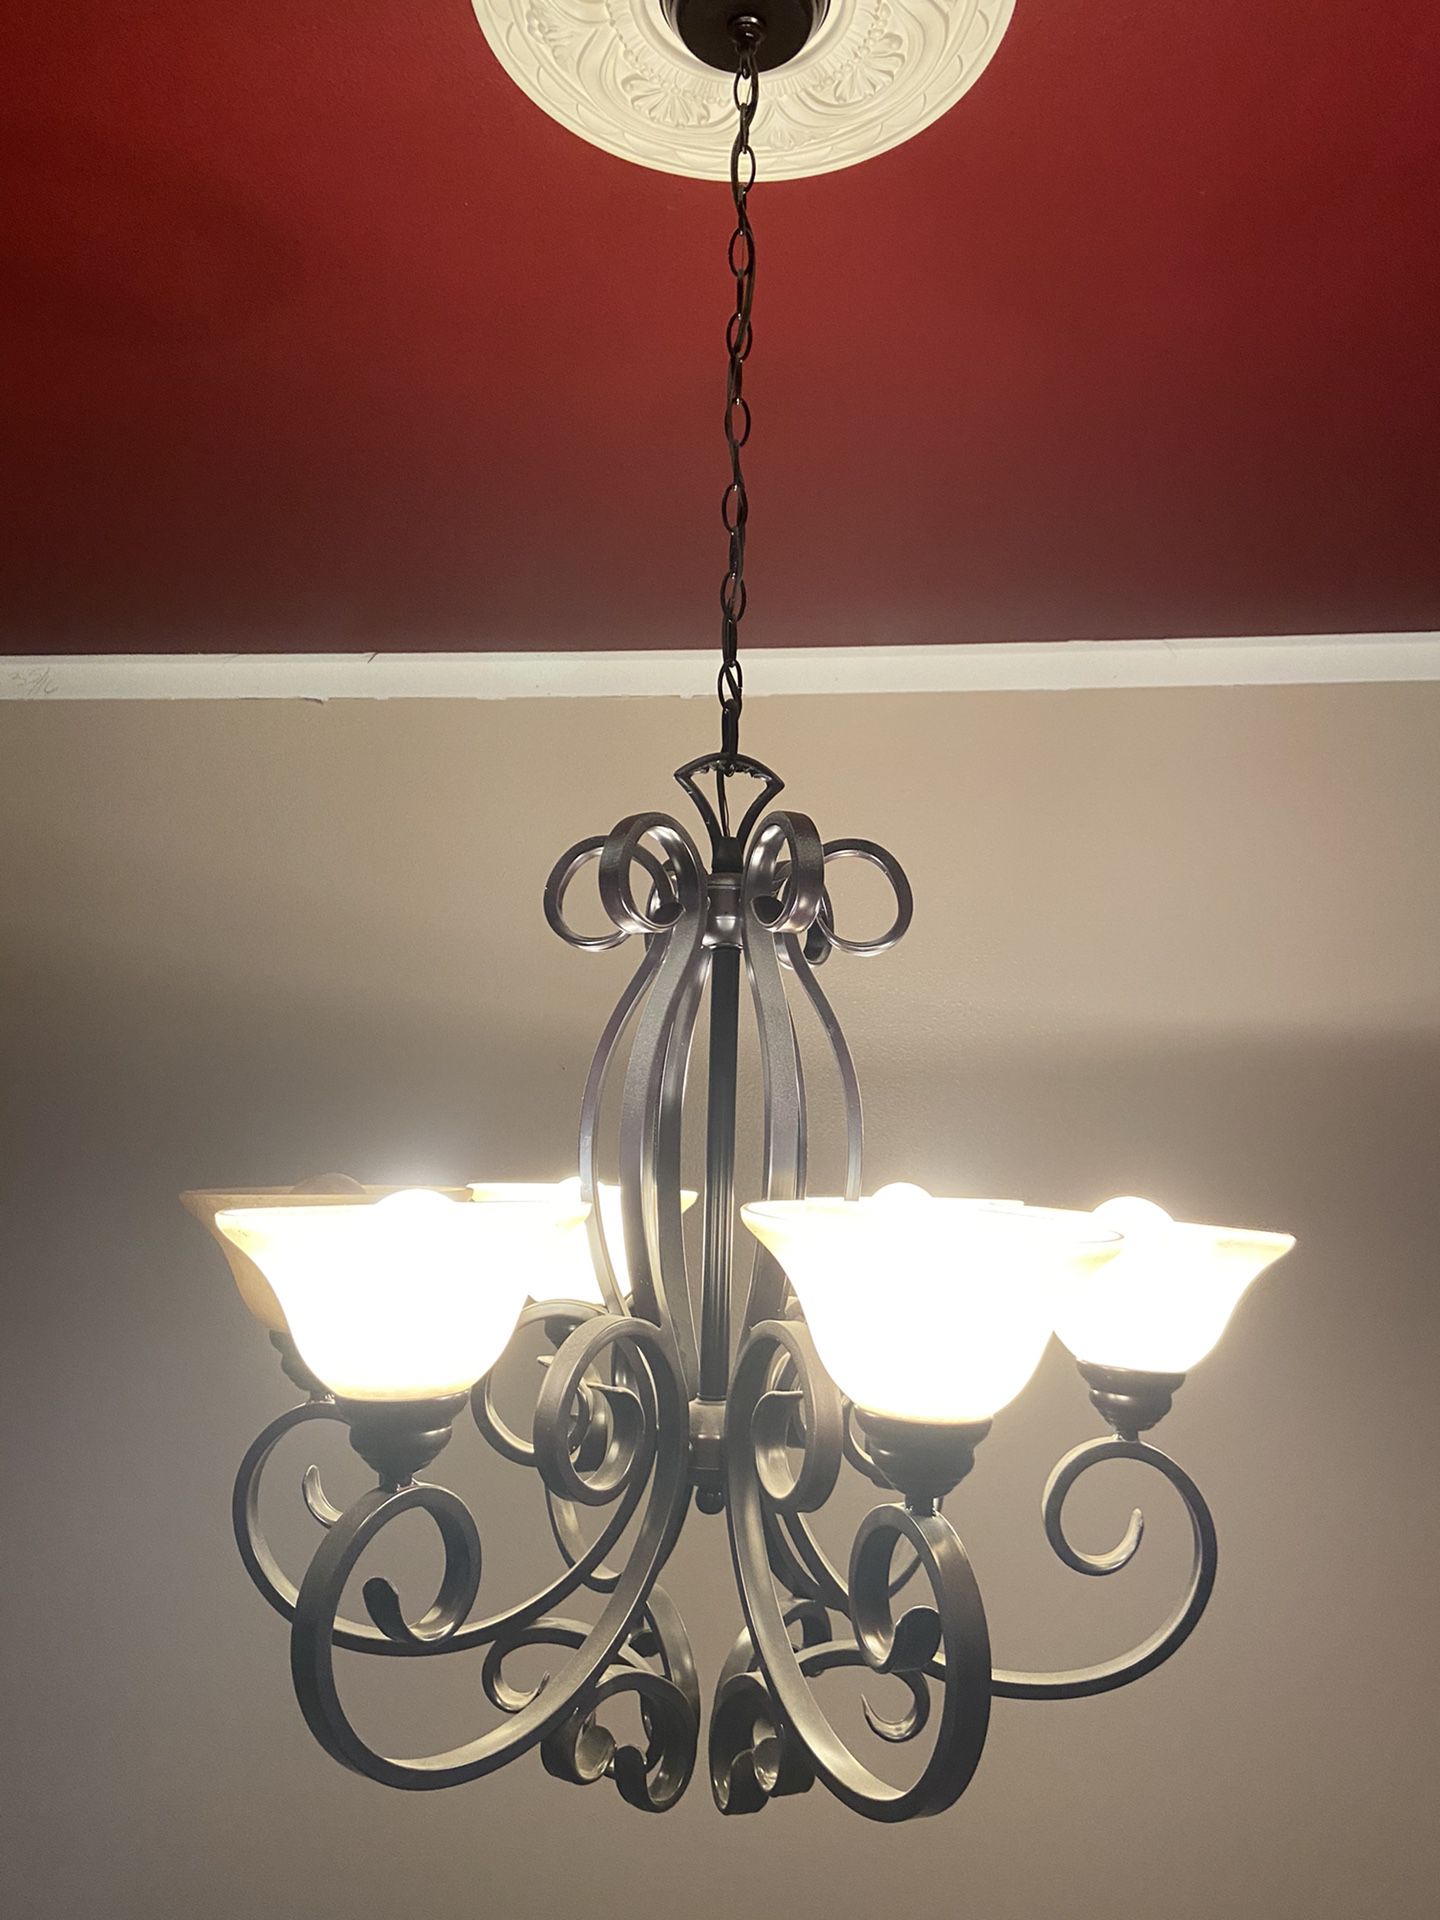 Light fixture / chandelier